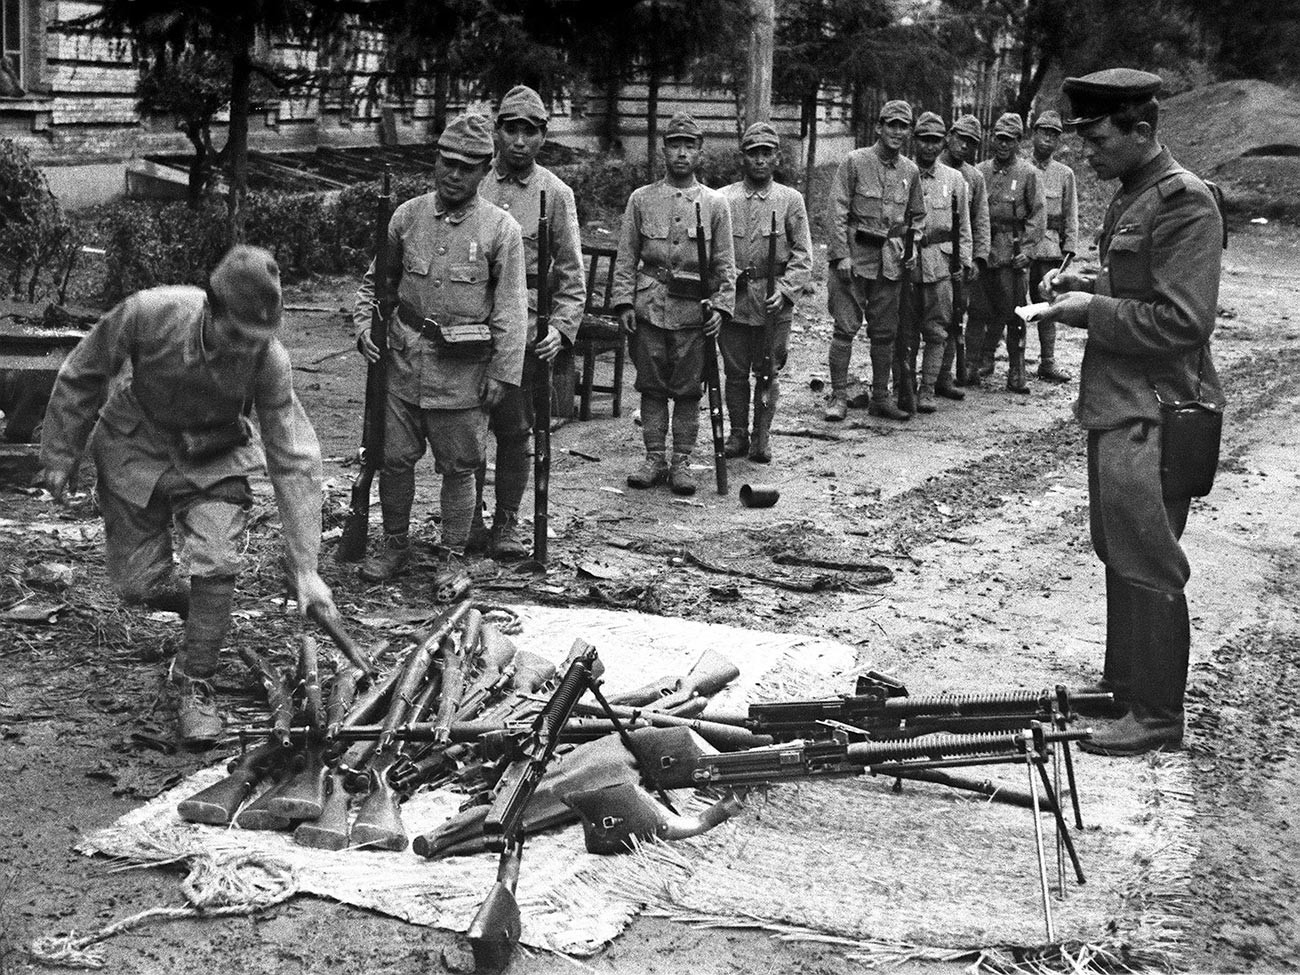 Druga svetovna vojna, avgust 1945: Zlom Japonskega imperija. Mandžurska operacija od 9. avgusta do 2. septembra 1945. Kapitulacija Kvantunške armade.